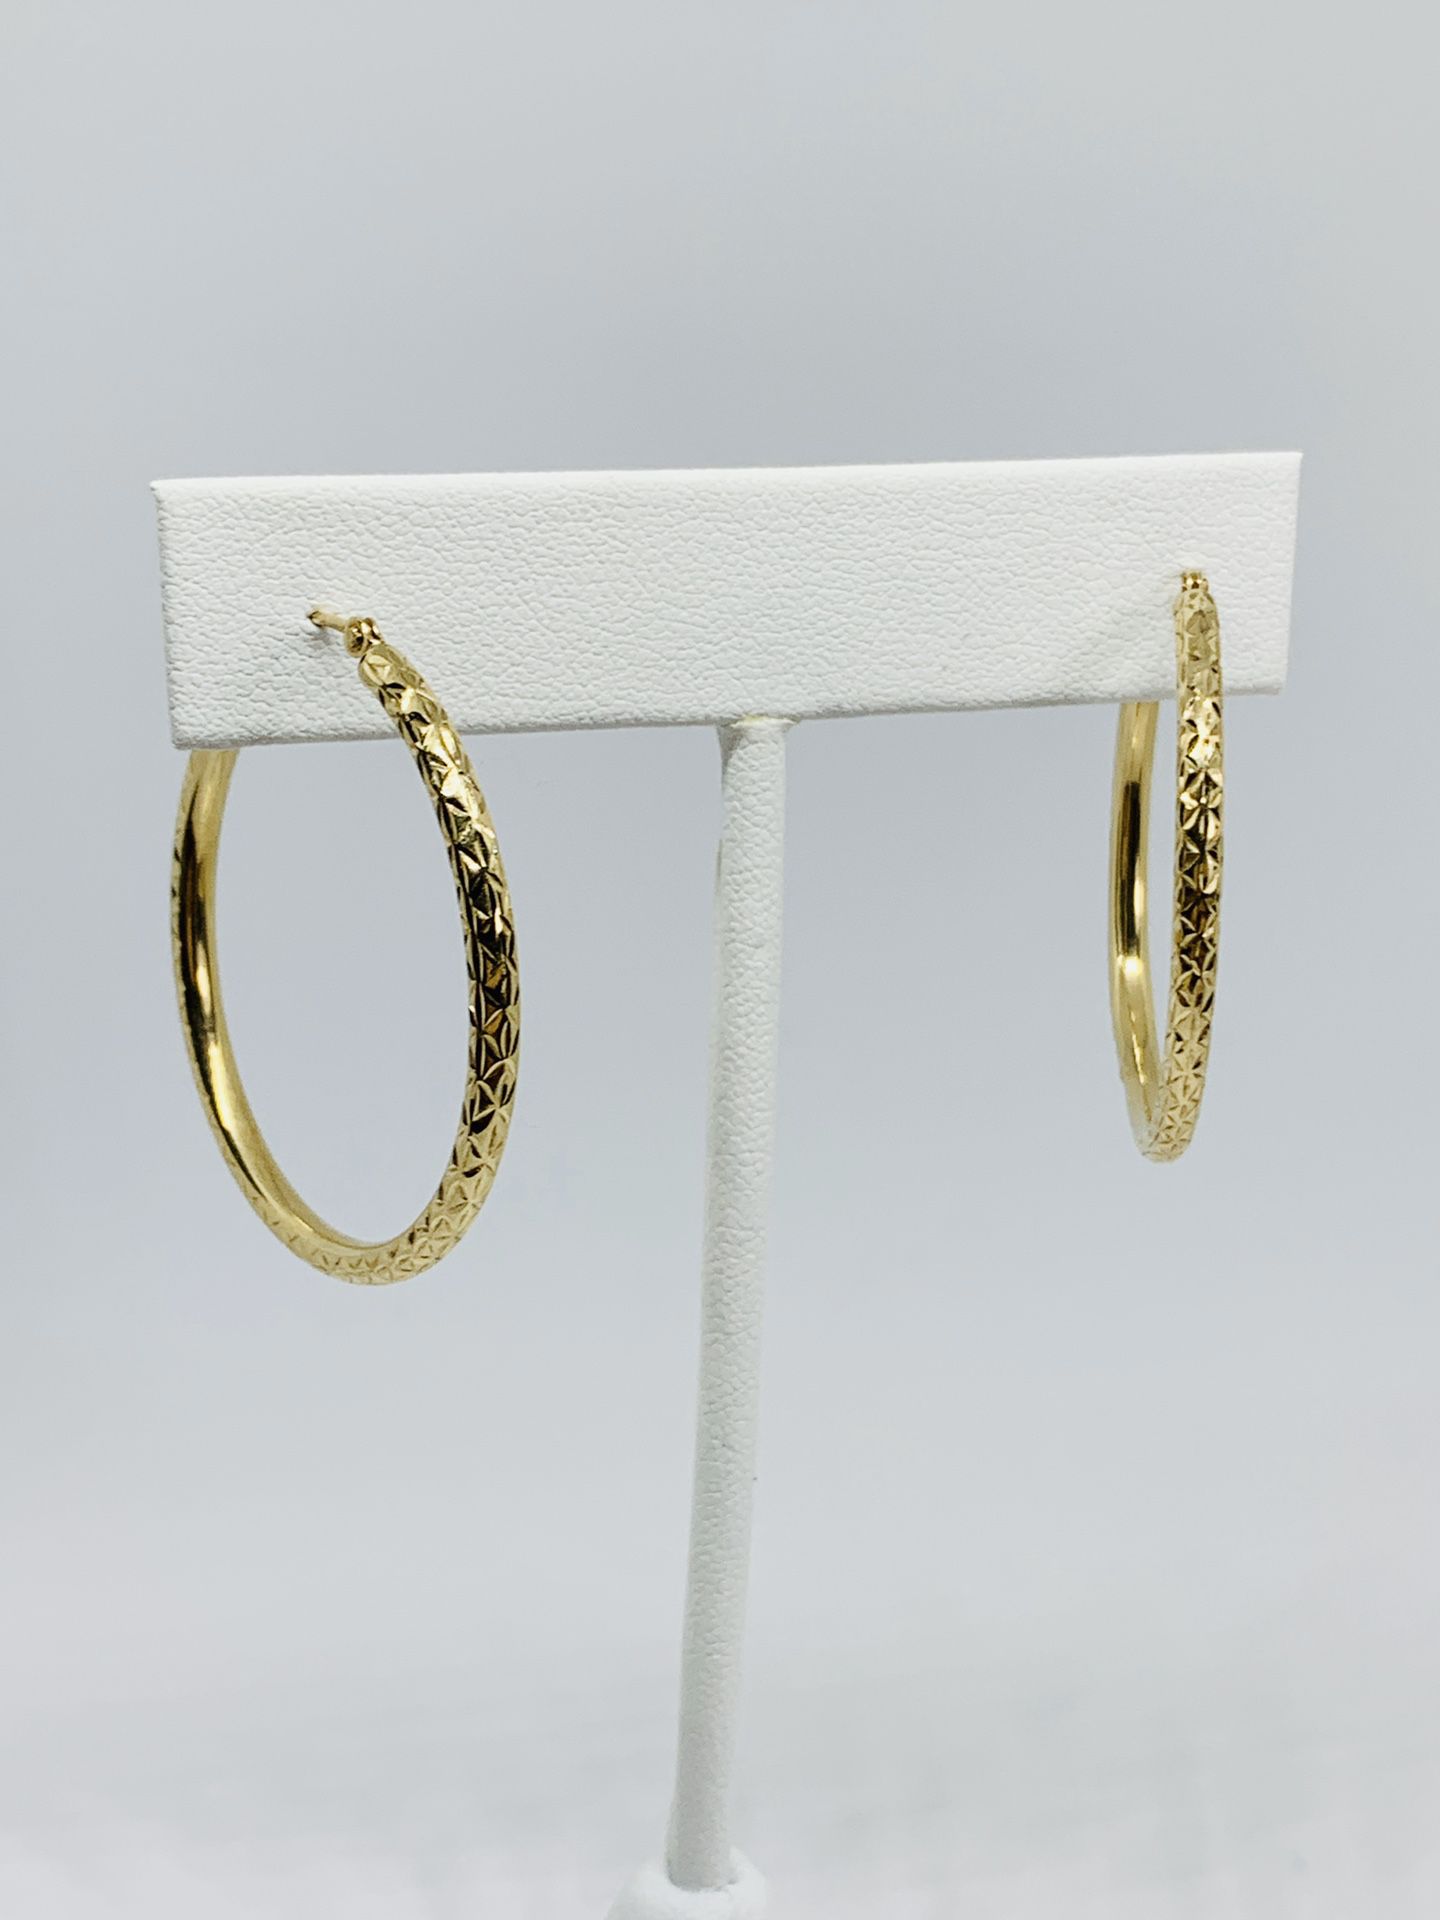 Real 10k Gold Hoop Earrings Hoops 34mm Diamond Cut Hollow Tube Arracadas de Oro con Corte de Diamante